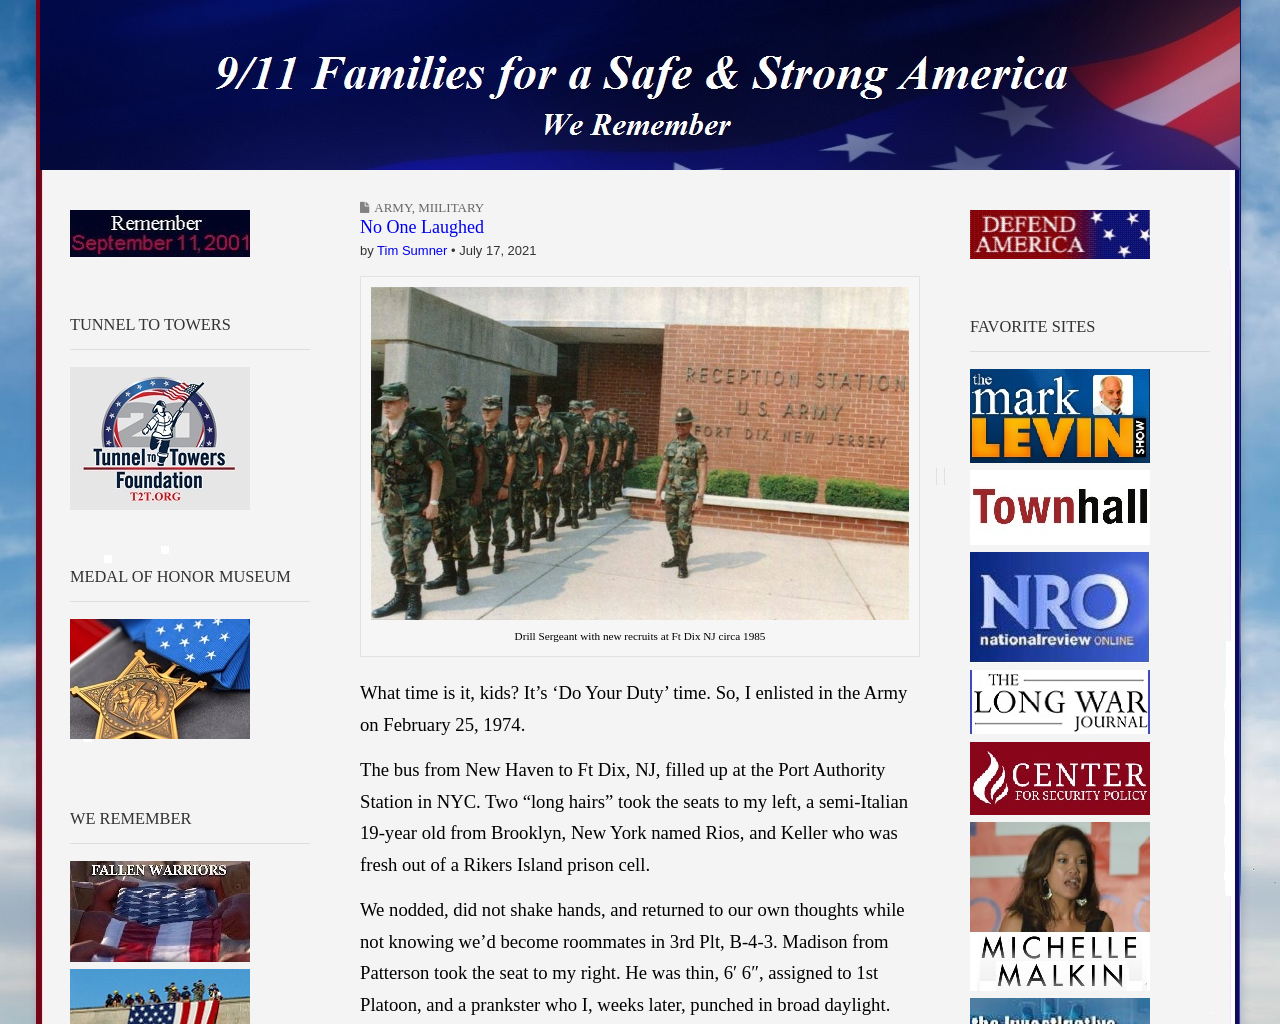 911familiesforamerica.org